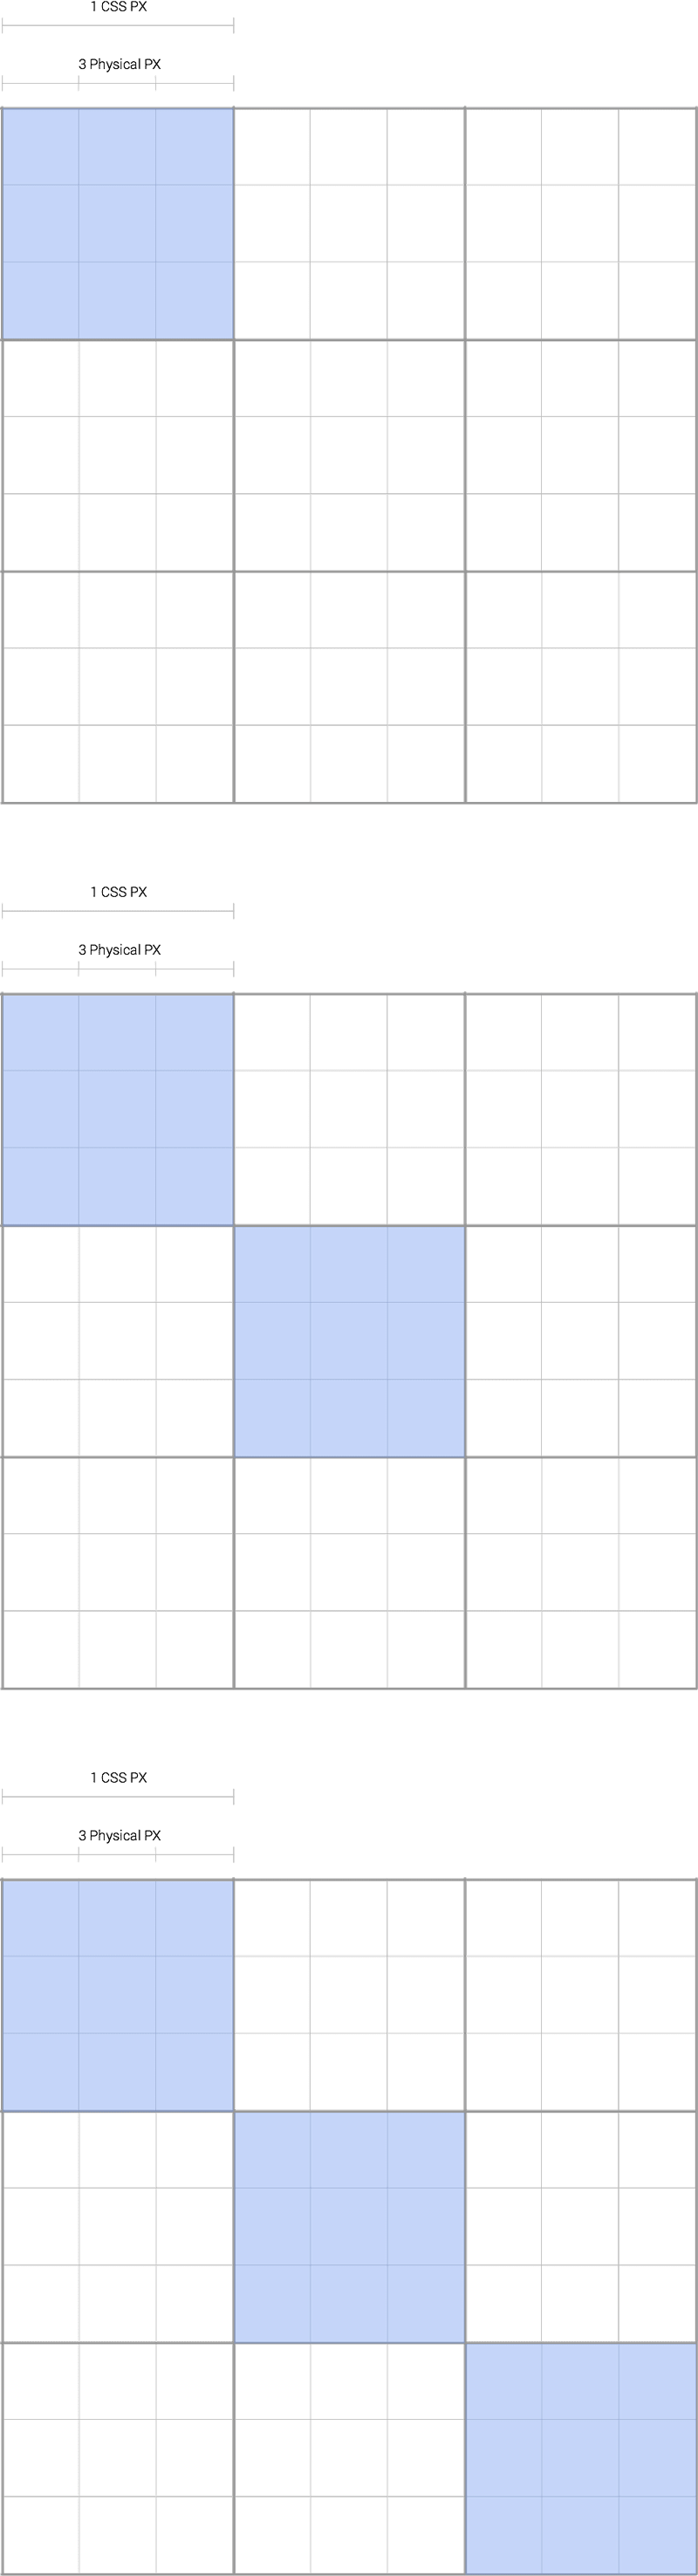 Précision des pixels CSS lors du geste